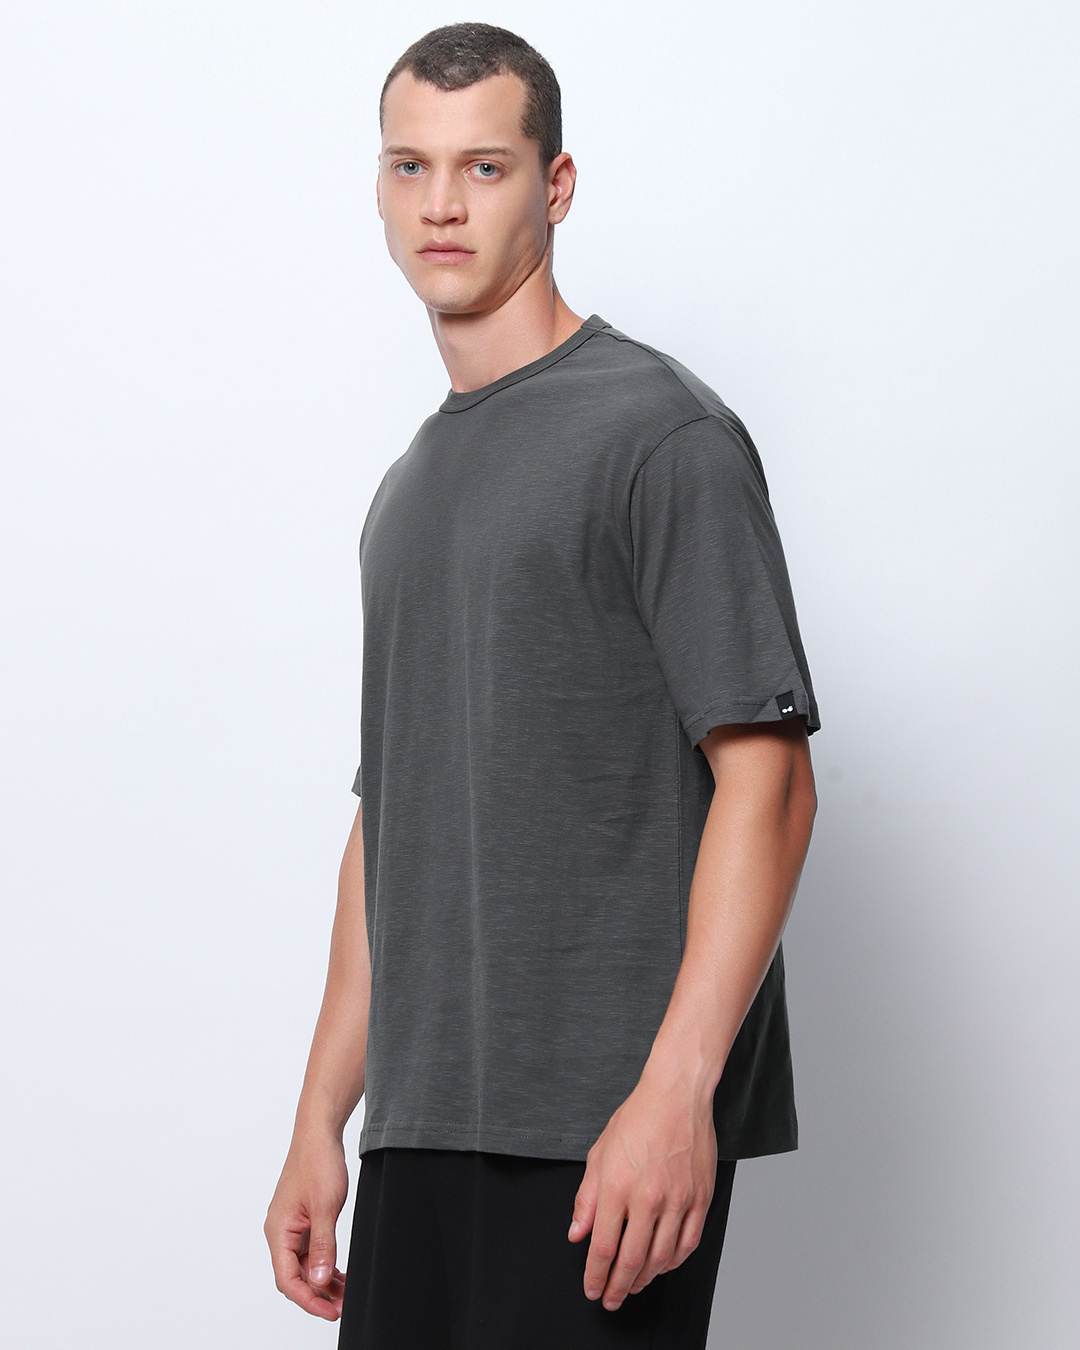 Buy Men's Grey Oversized T-shirt Online at Bewakoof